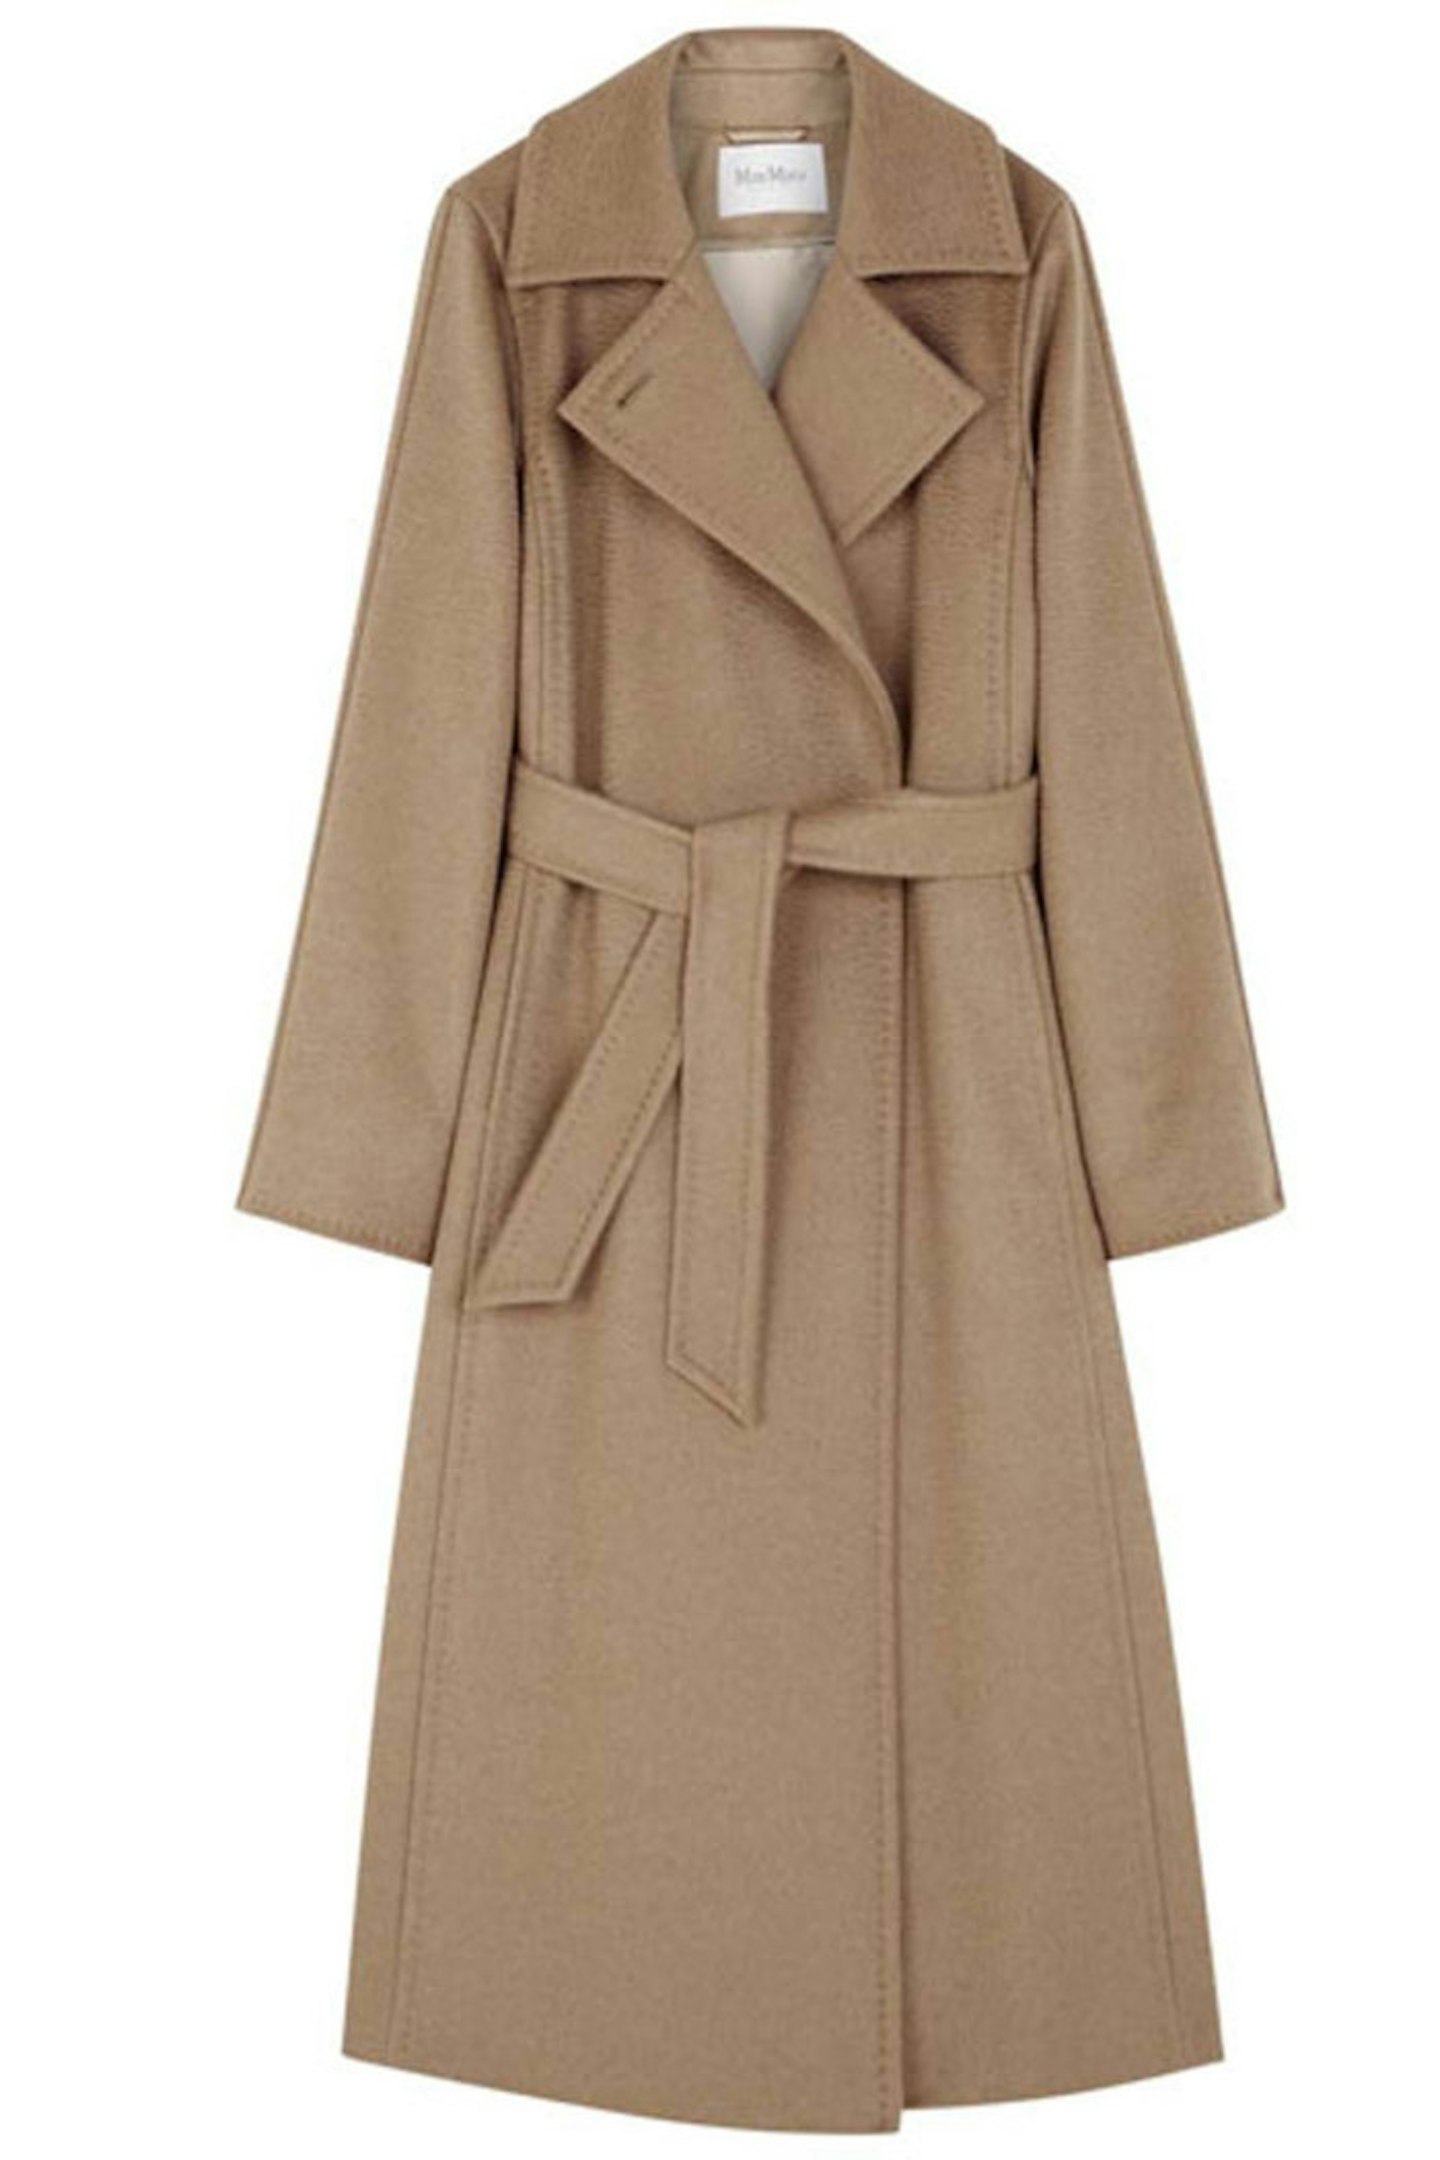 Coat, £1125, Max Mara at Harvey Nichols